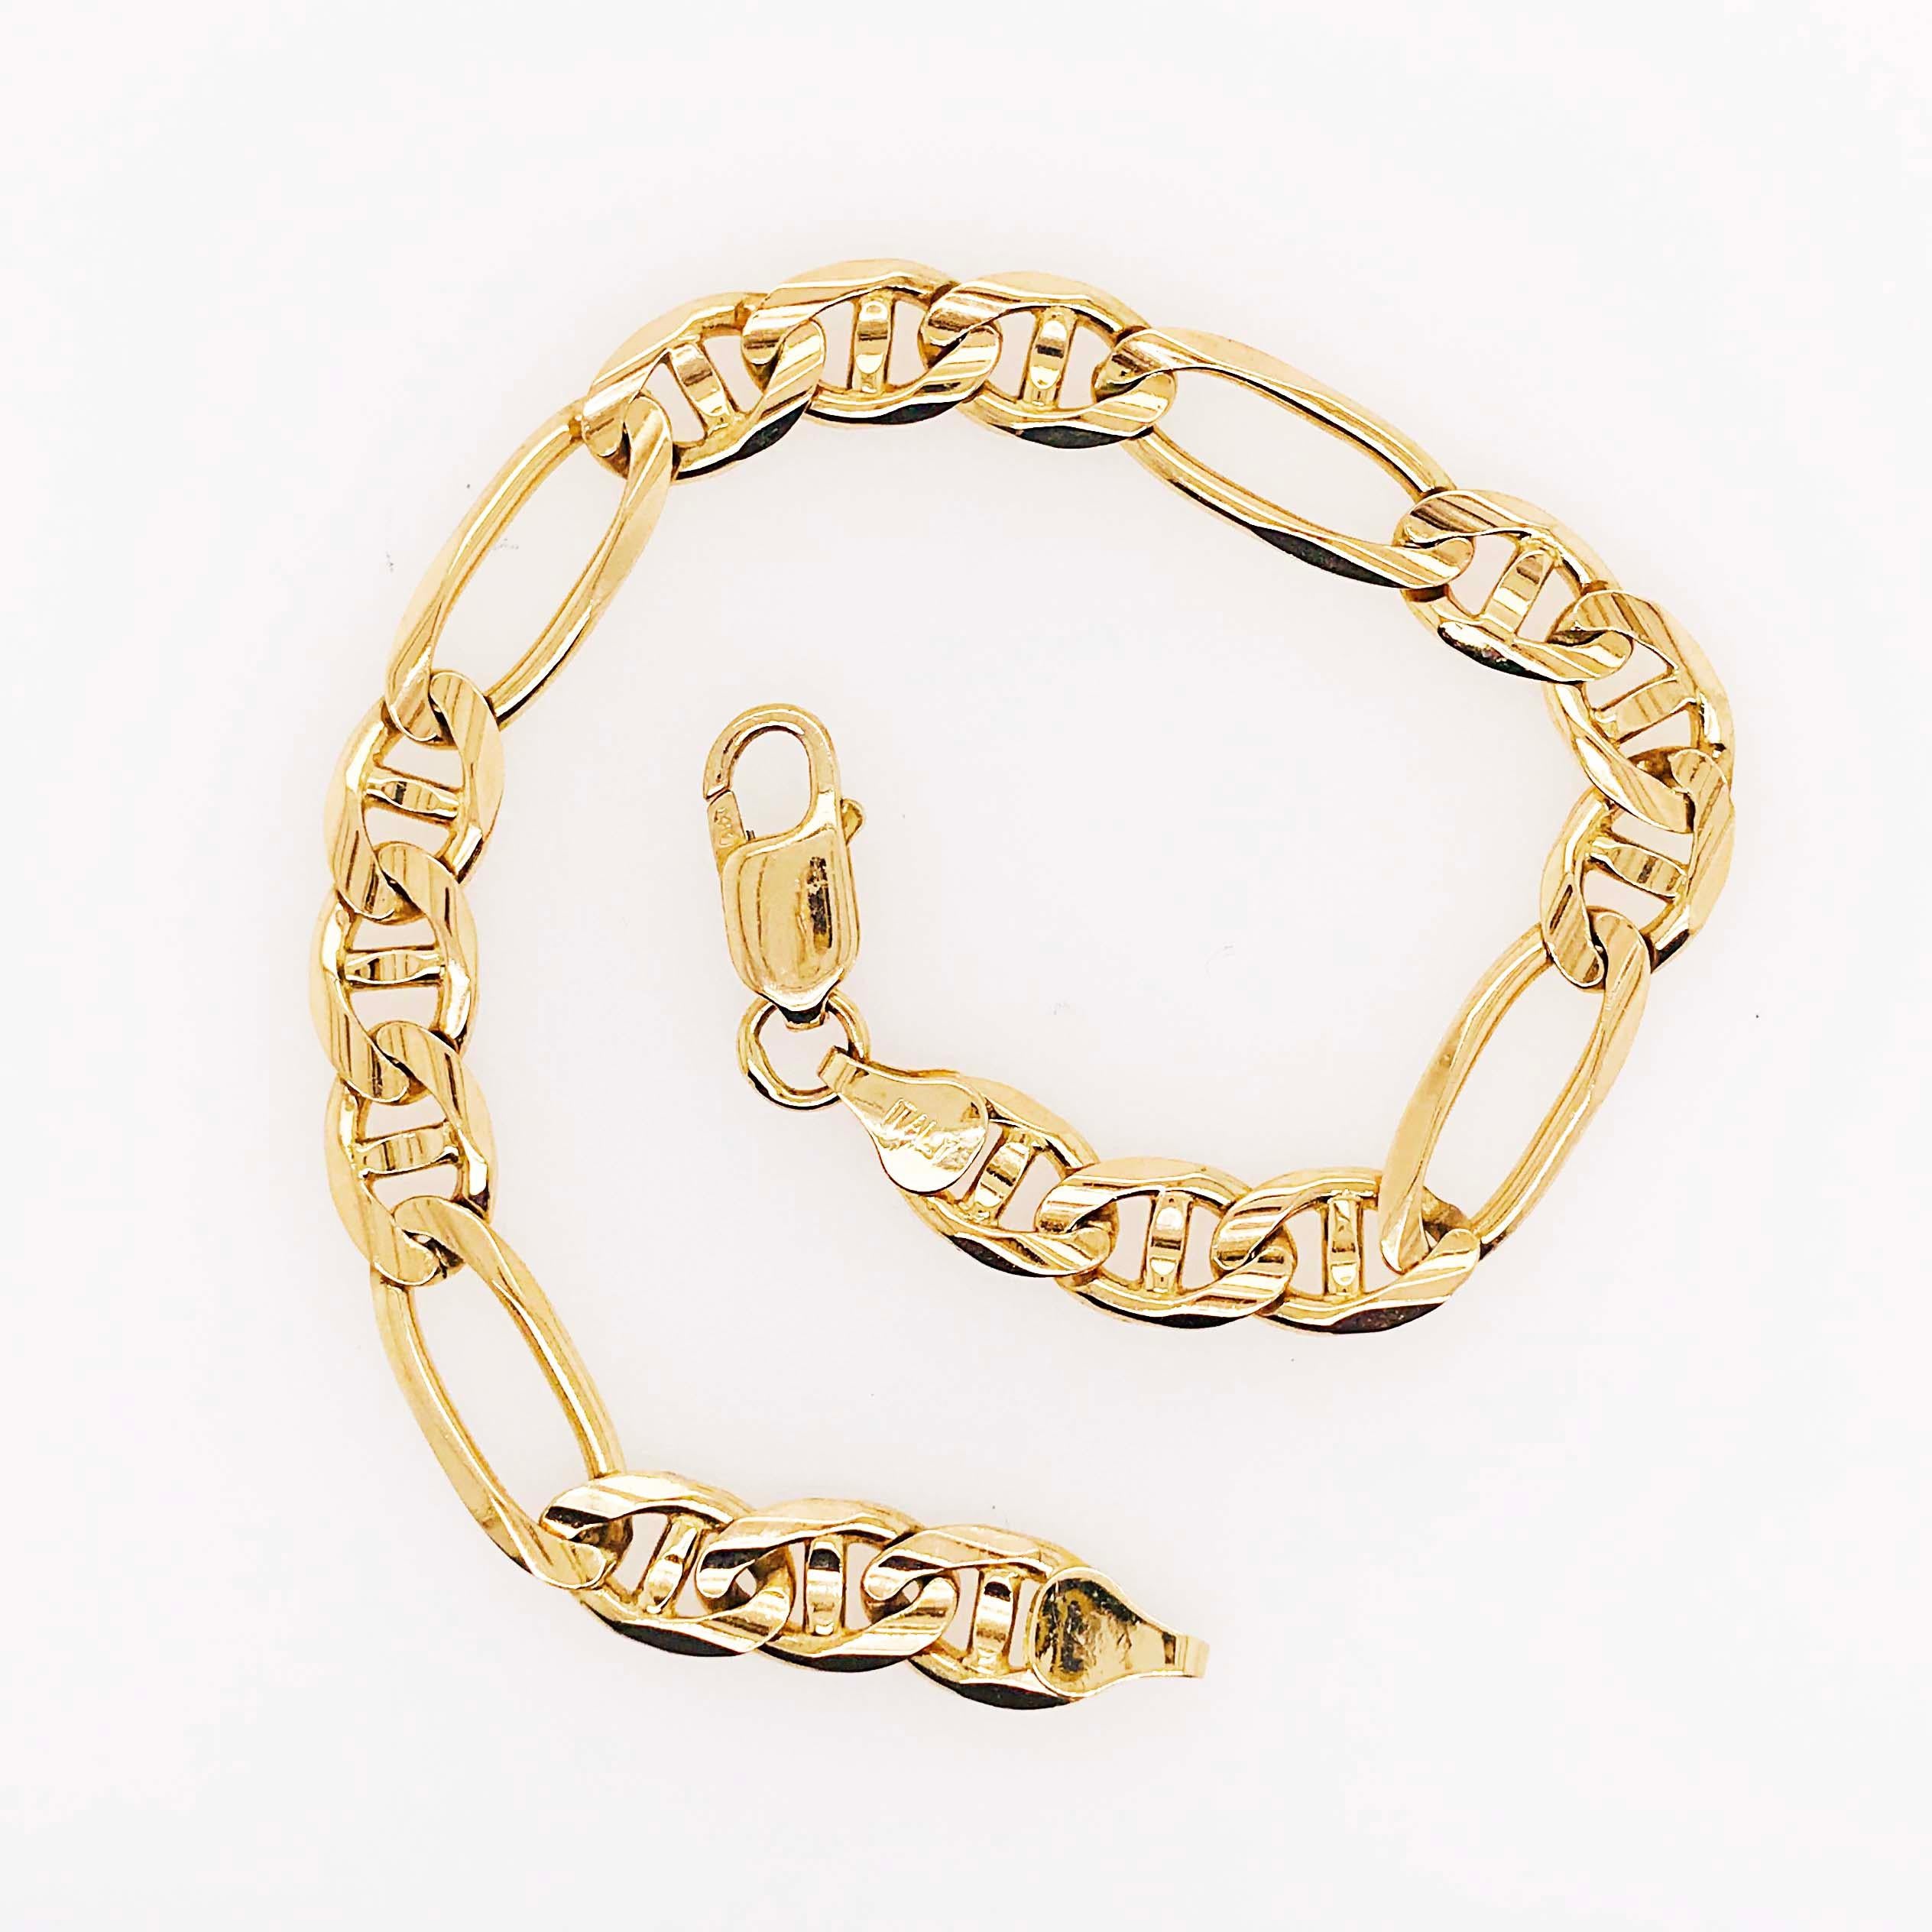 8 karat gold chain